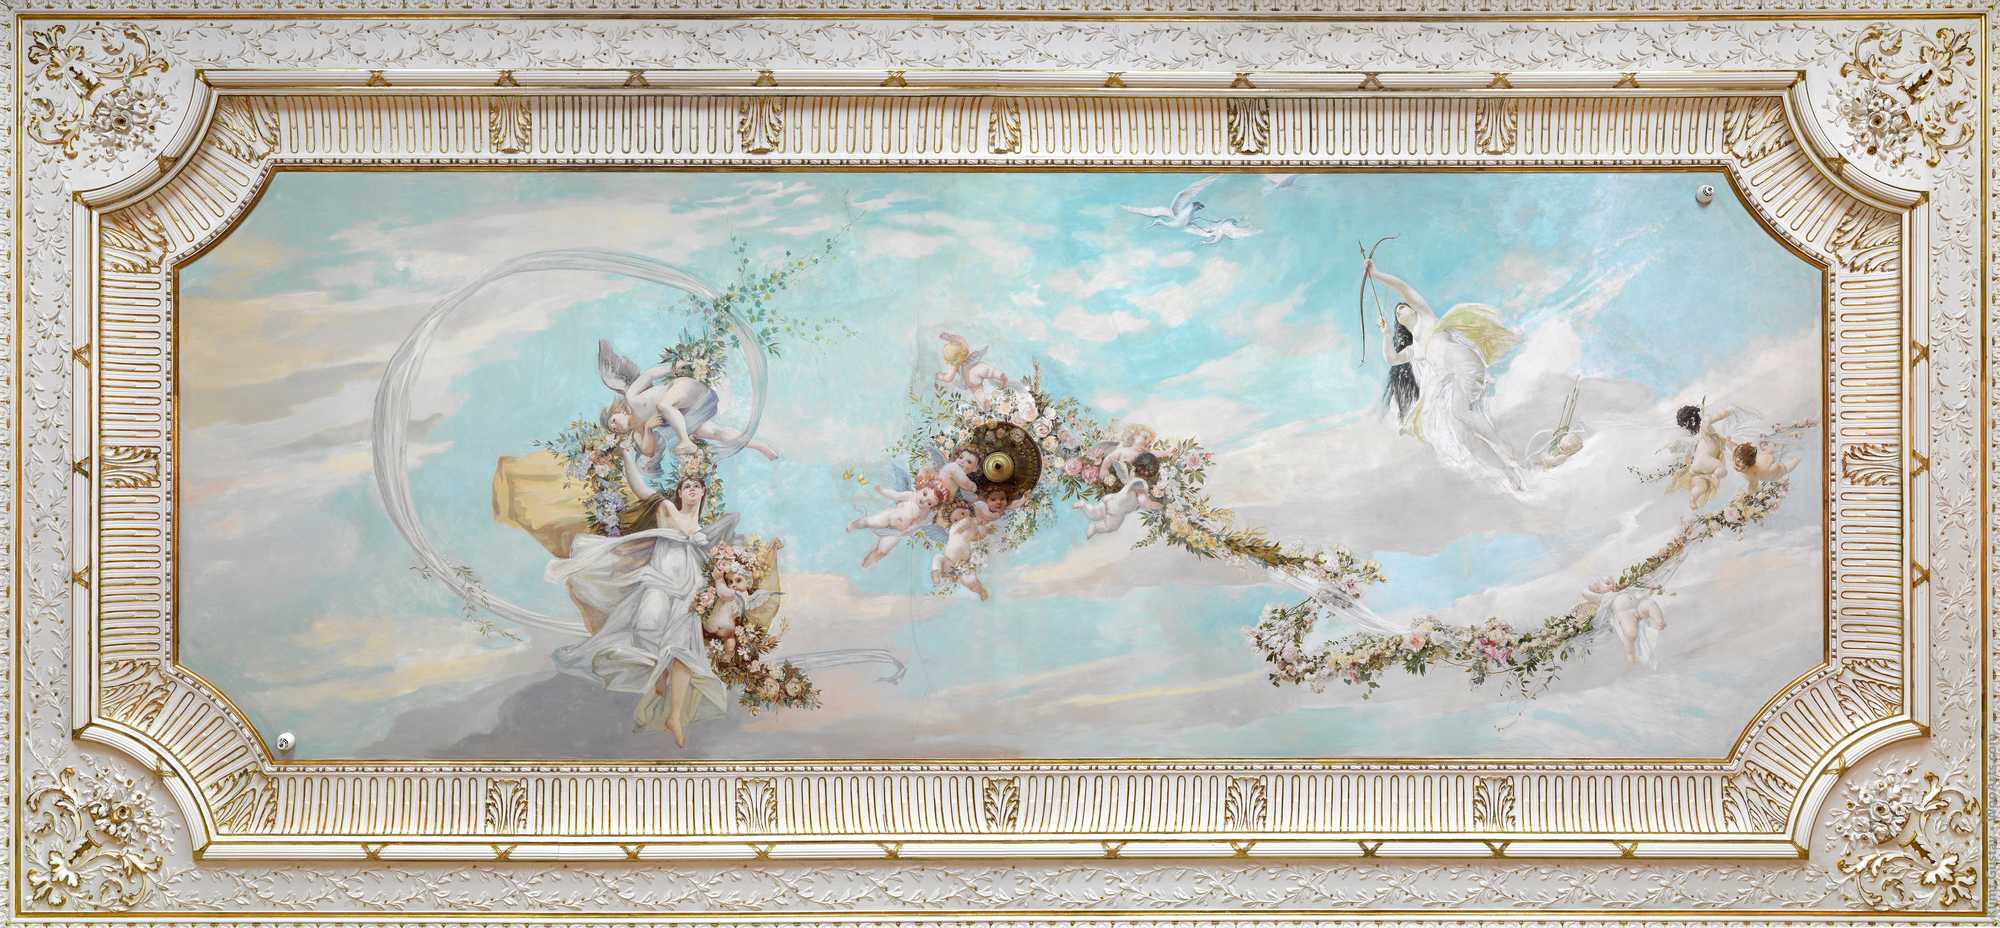 The ceiling painting Spring in the salon of the empress, Hermesvilla Gustav Klimt, Franz von Matsch, Ernst Klimt 1885